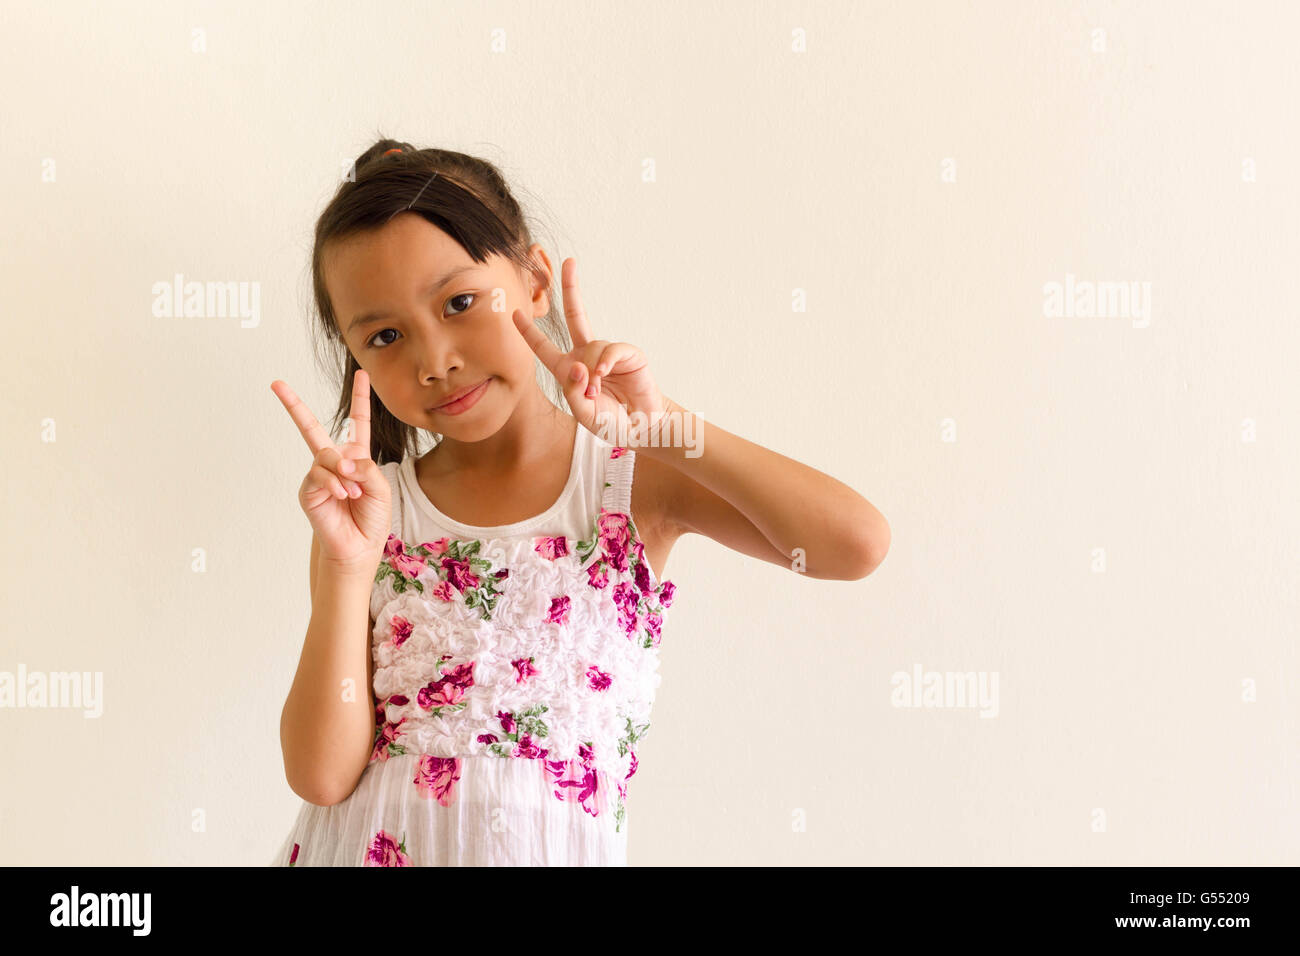 Asiatische Mädchen Kind ist Ausdrücke lustig Stockfoto